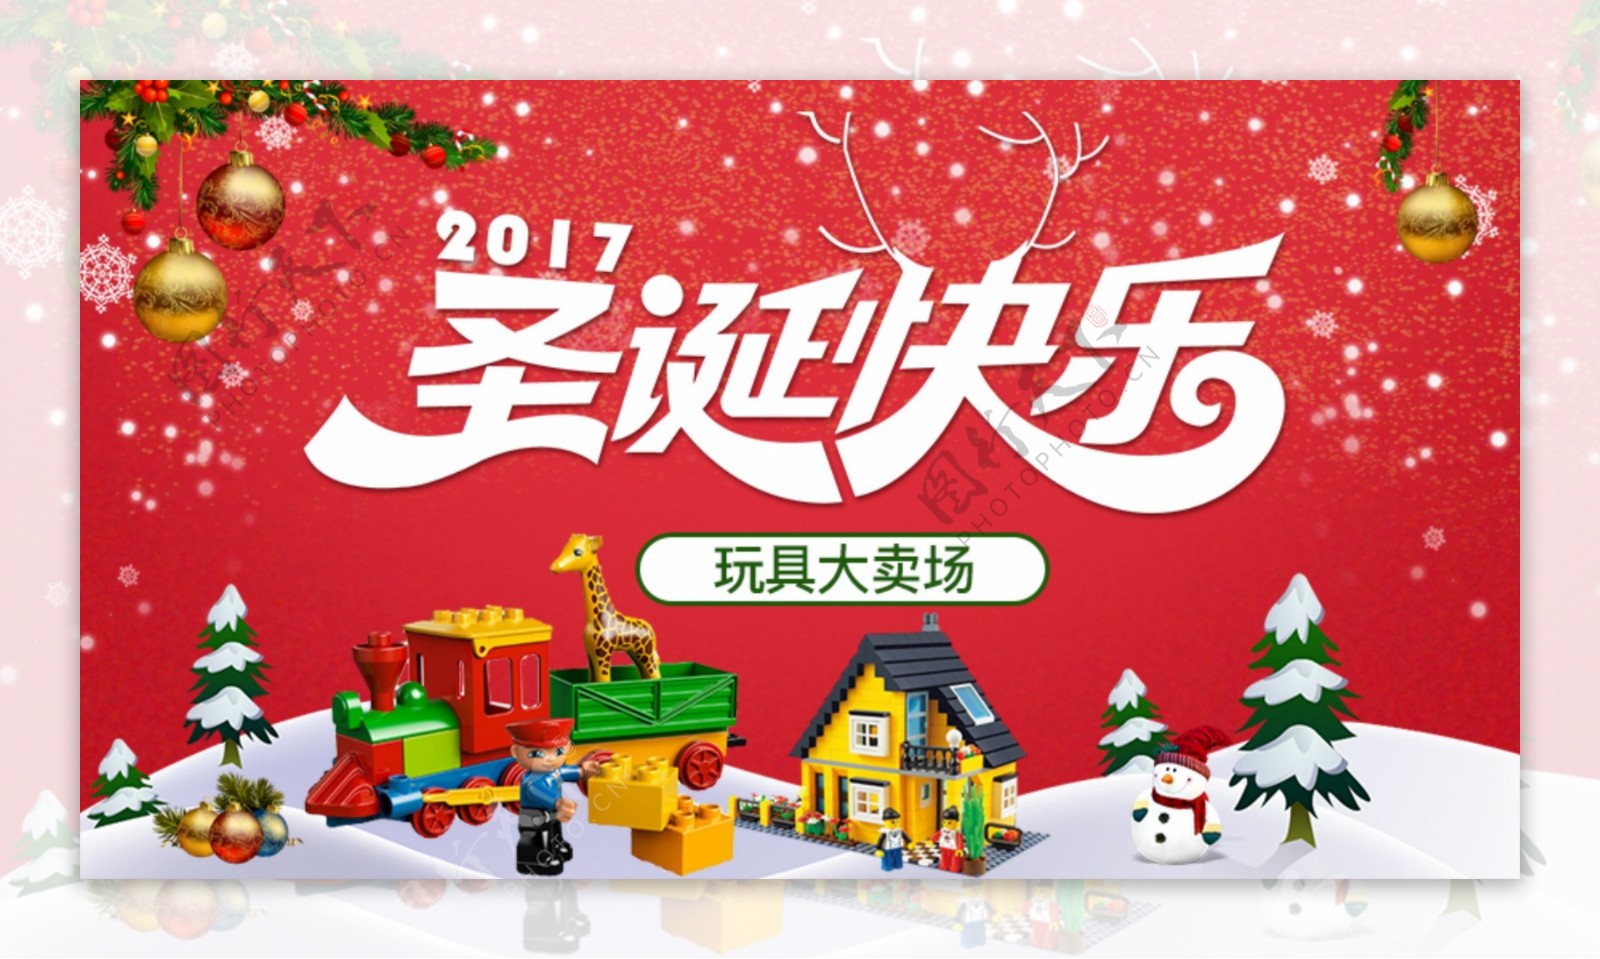 淘宝天猫玩具促销圣诞节节日海报